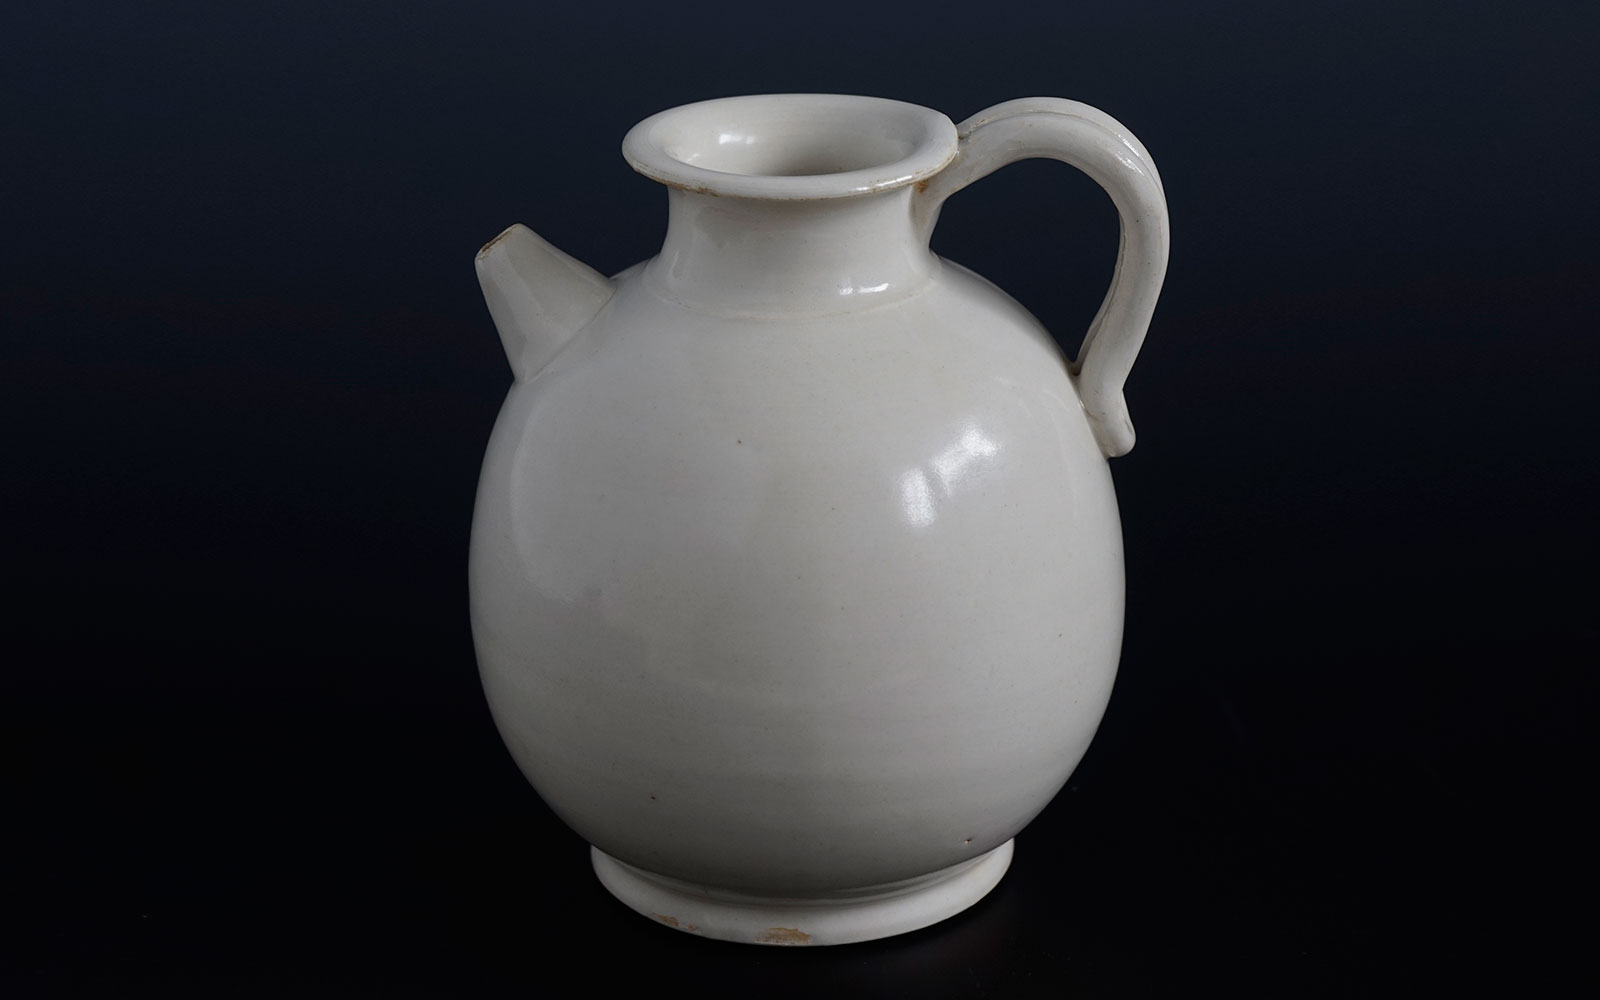 唐 邢窯白磁水注 Xing ware white-glazed ewer, Tang dynasty (618-907 CE), h12.8cm